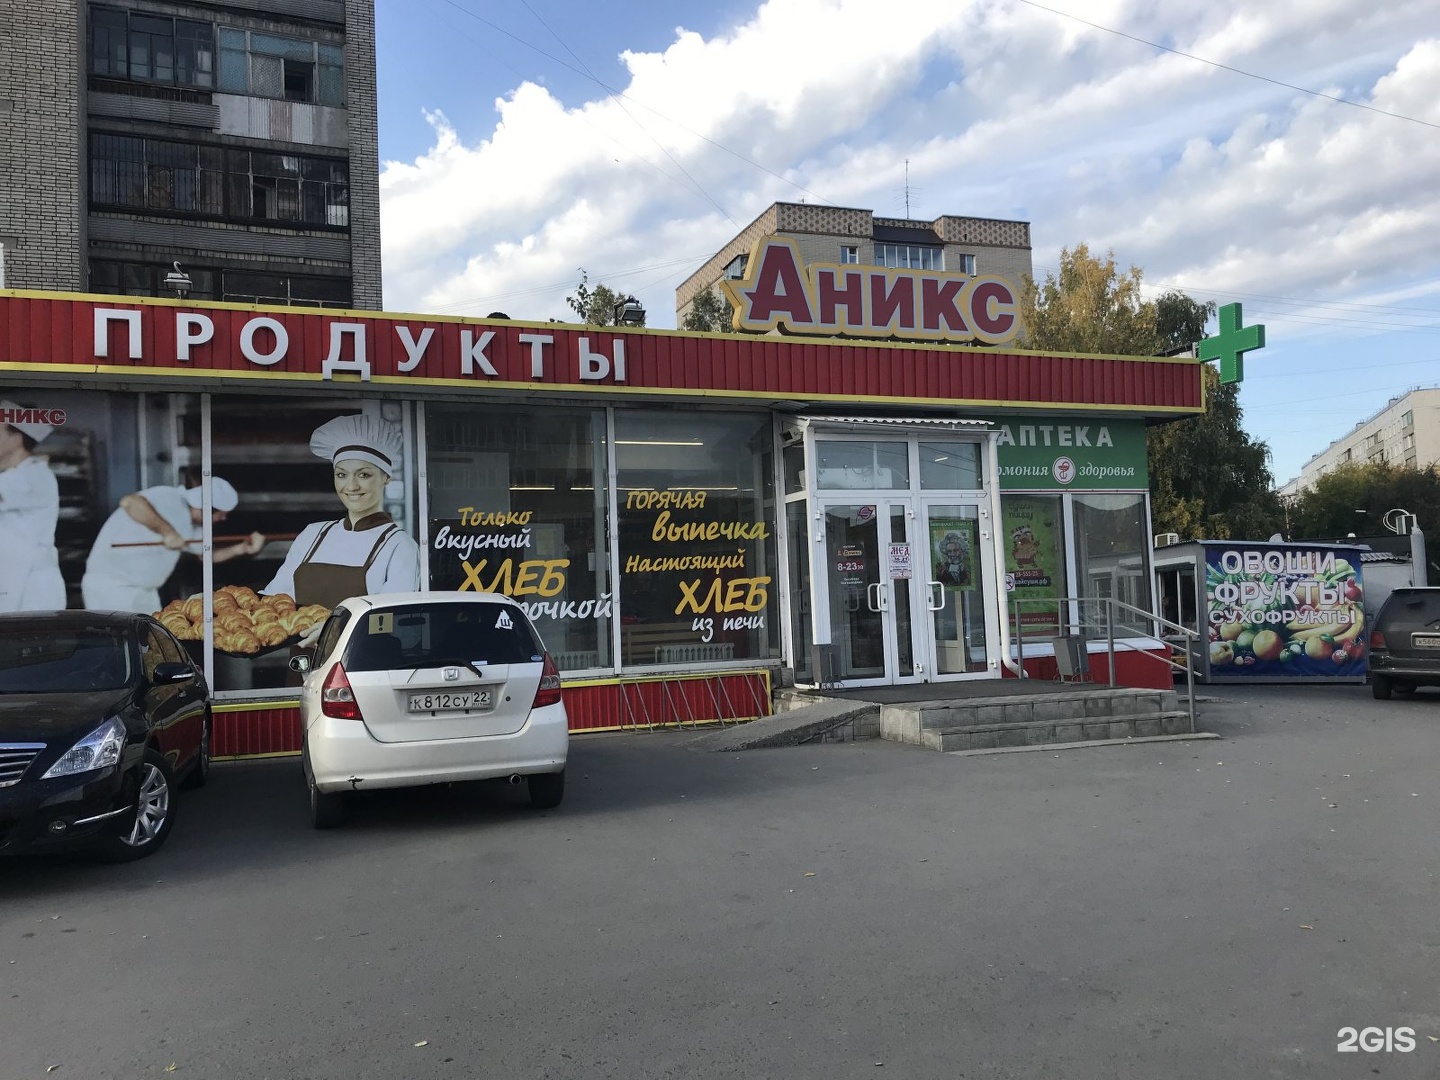 Б 16 в новосибирске. Аникс. Аникс супермаркет. Аникс Новосибирск. Продуктовый магазин Аникс.